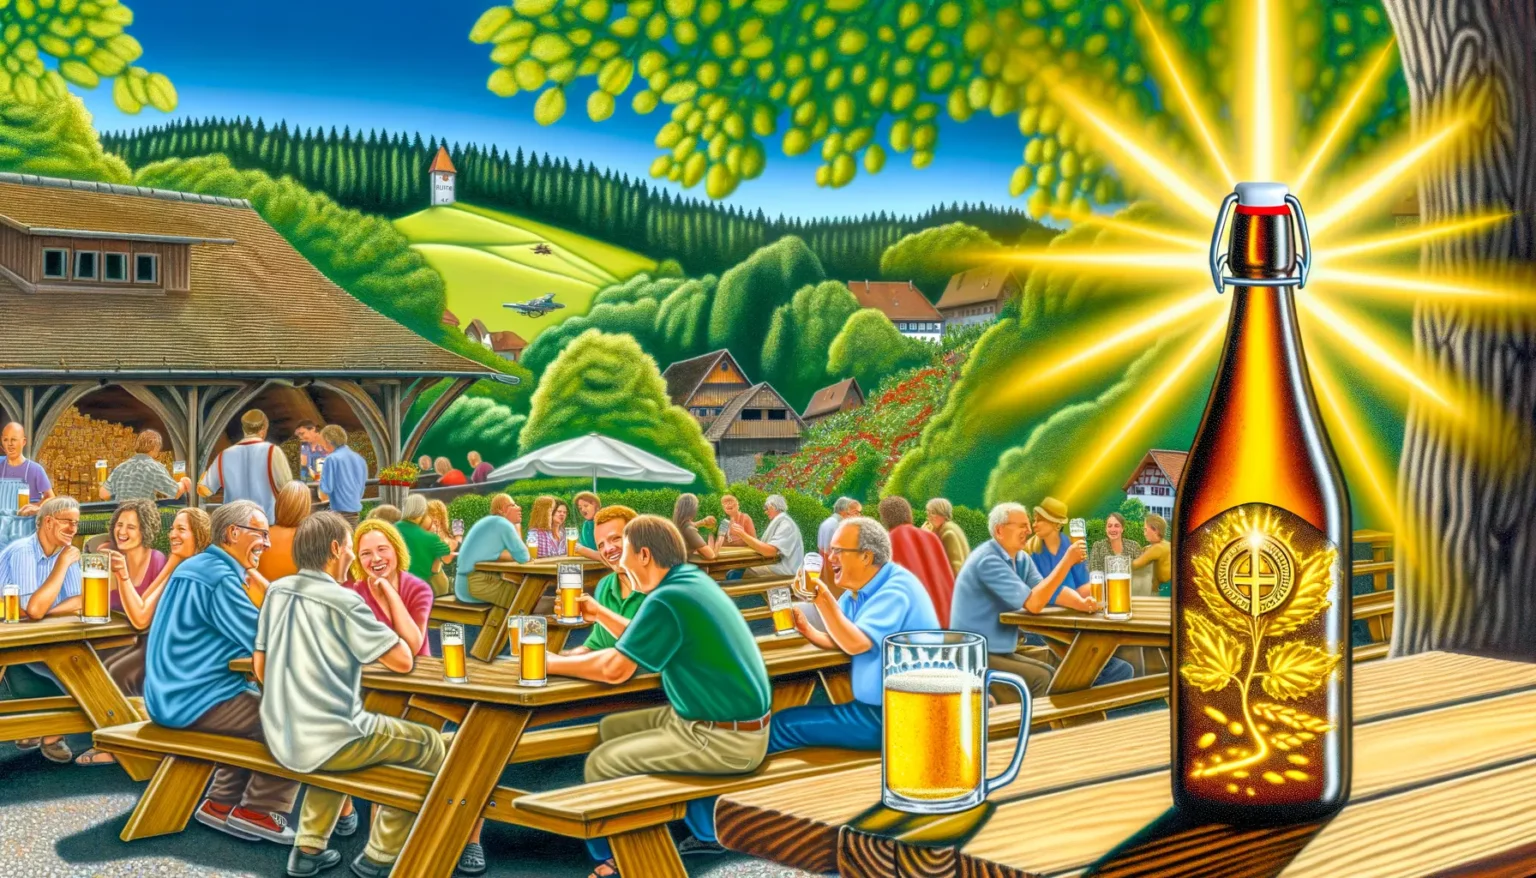 Eine lebhaft kolorierte Szene in einem Biergarten mit lachenden und interagierenden Menschen, die an Holztischen sitzen und Bier trinken. Im Vordergrund steht eine leuchtende Bierflasche mit auffälligen Strahlen, die von ihr ausgehen. Im Hintergrund befindet sich eine idyllische Landschaft mit Hügeln, einem Wald und traditionellen Häusern.